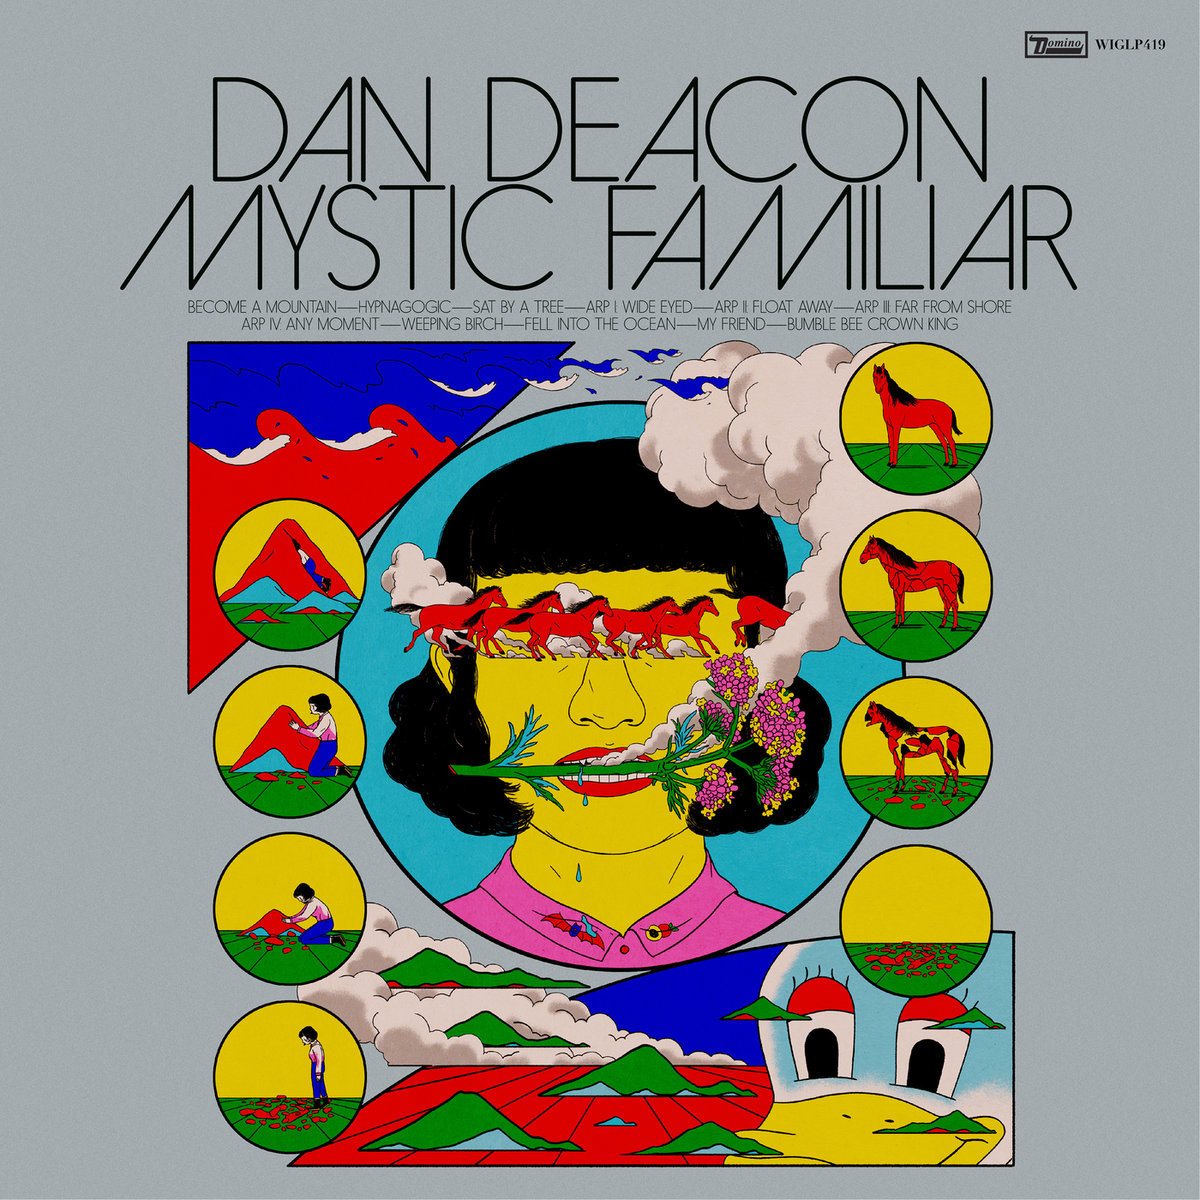 Dan Deacon e a odisseia sonora de “Mystic Familiar”